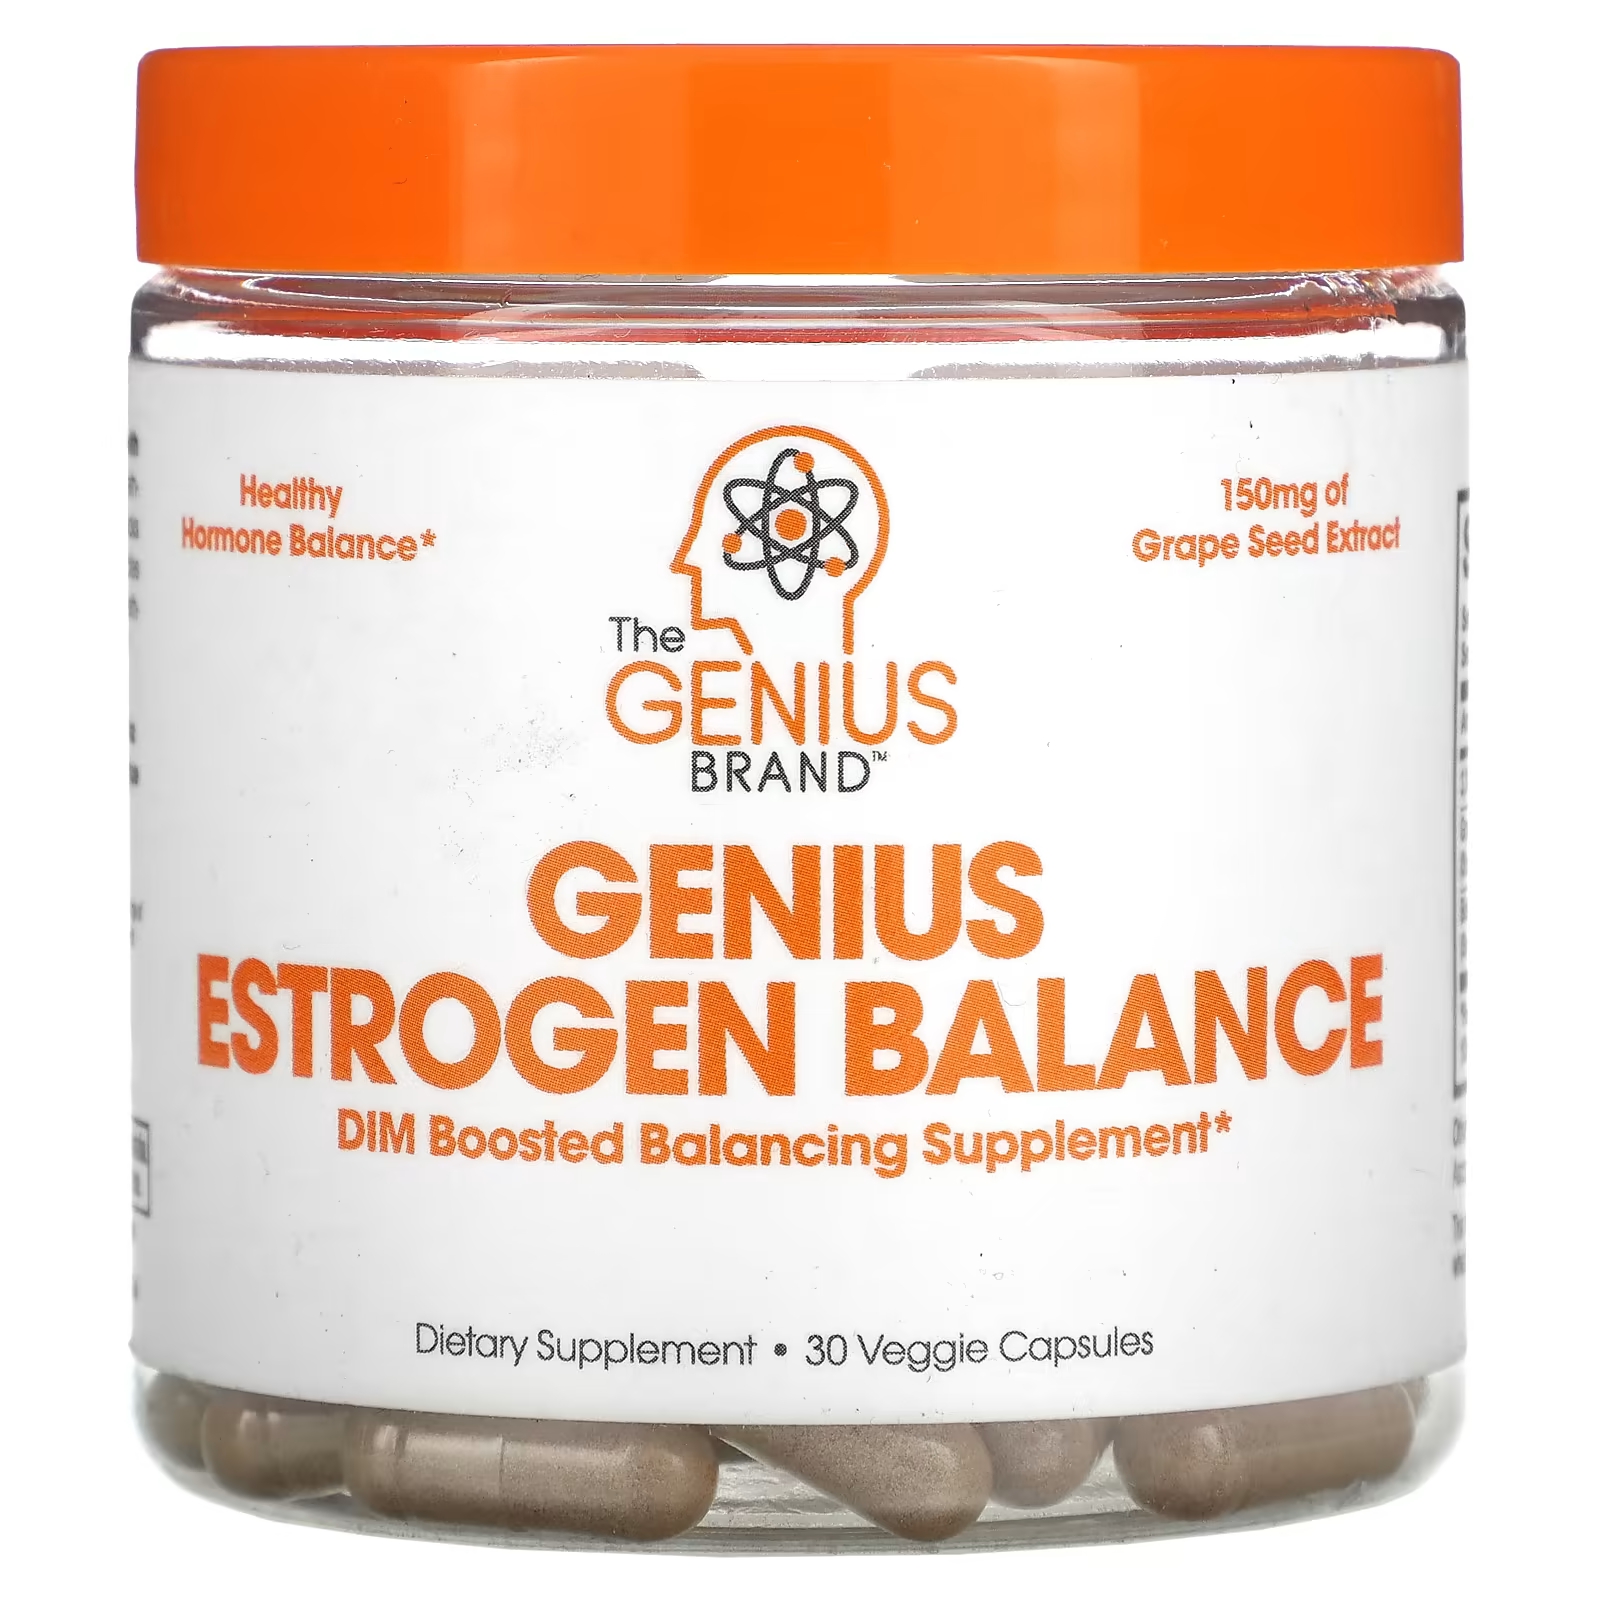 Пищевая добавка Genius Estrogen Balance для гормонального баланса, 30 капсул